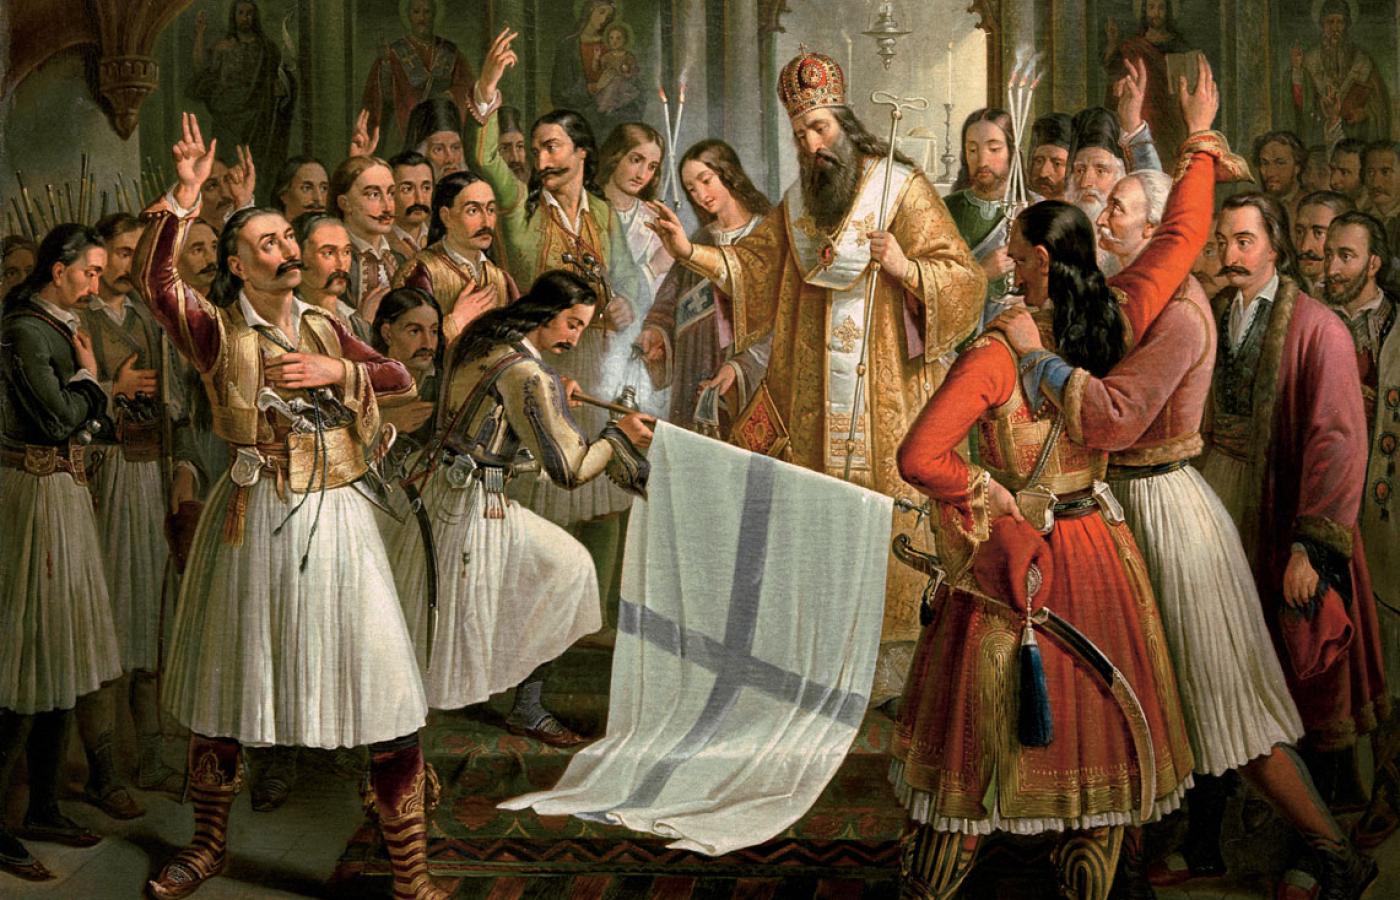 Biskup Patros, błogosławi sztandar w czasie greckich walk o niepodległość w latach 1821-30. Obraz Theodorosa Vryzakisa z 1865 r.